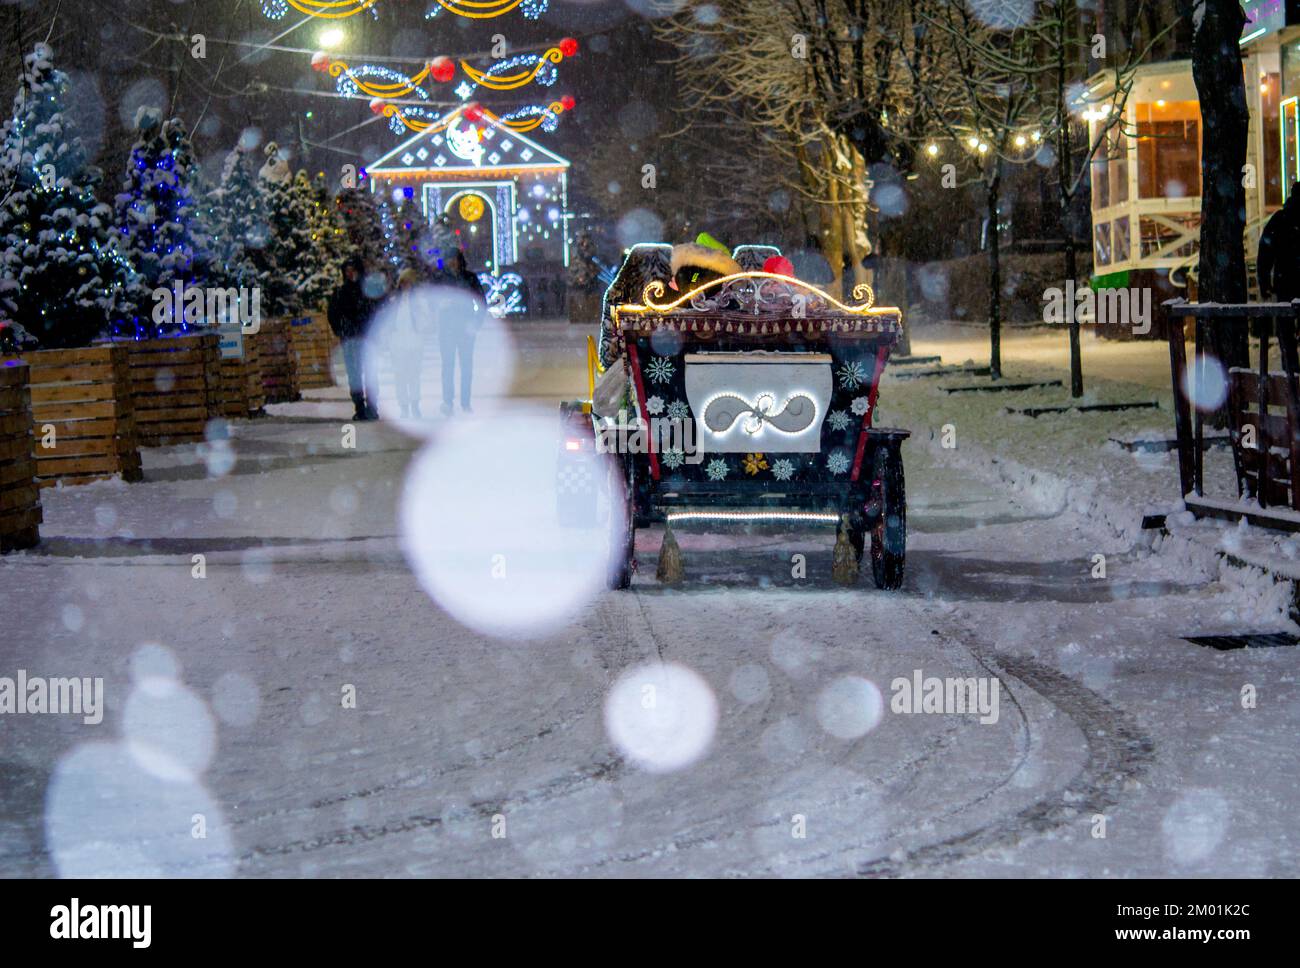 Un wagon joliment décoré qui descend dans une rue enneigée pendant les fortes chutes de neige les soirs d'hiver. Back-end Beaucoup d'arbres de Noël, décorations décoratives, illuminations et lumières de rue. Noël du nouvel an Banque D'Images